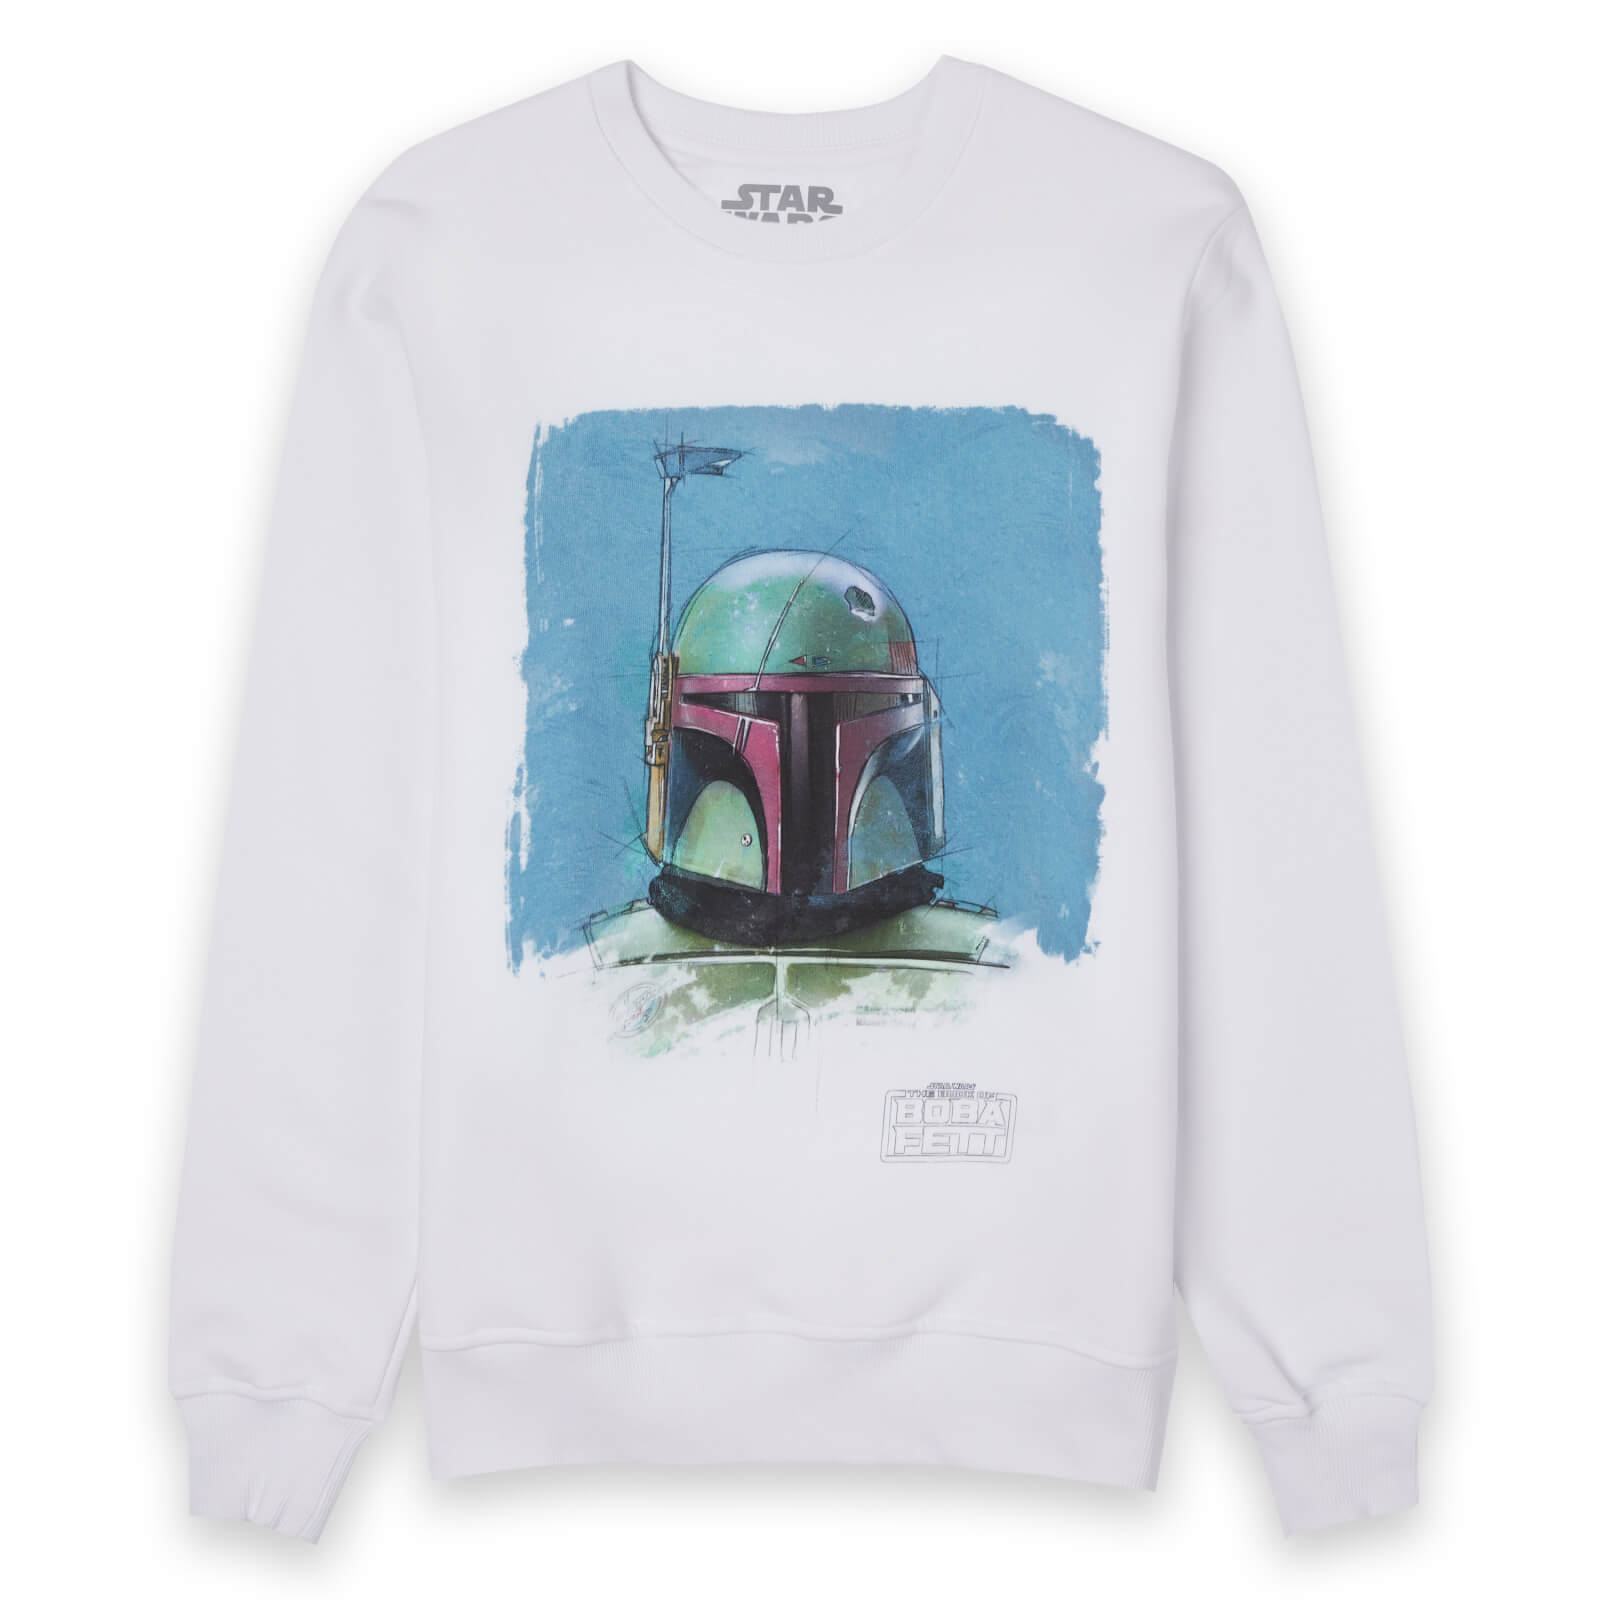 Star Wars Portrait Unisex Sweatshirt - White - M - Wit